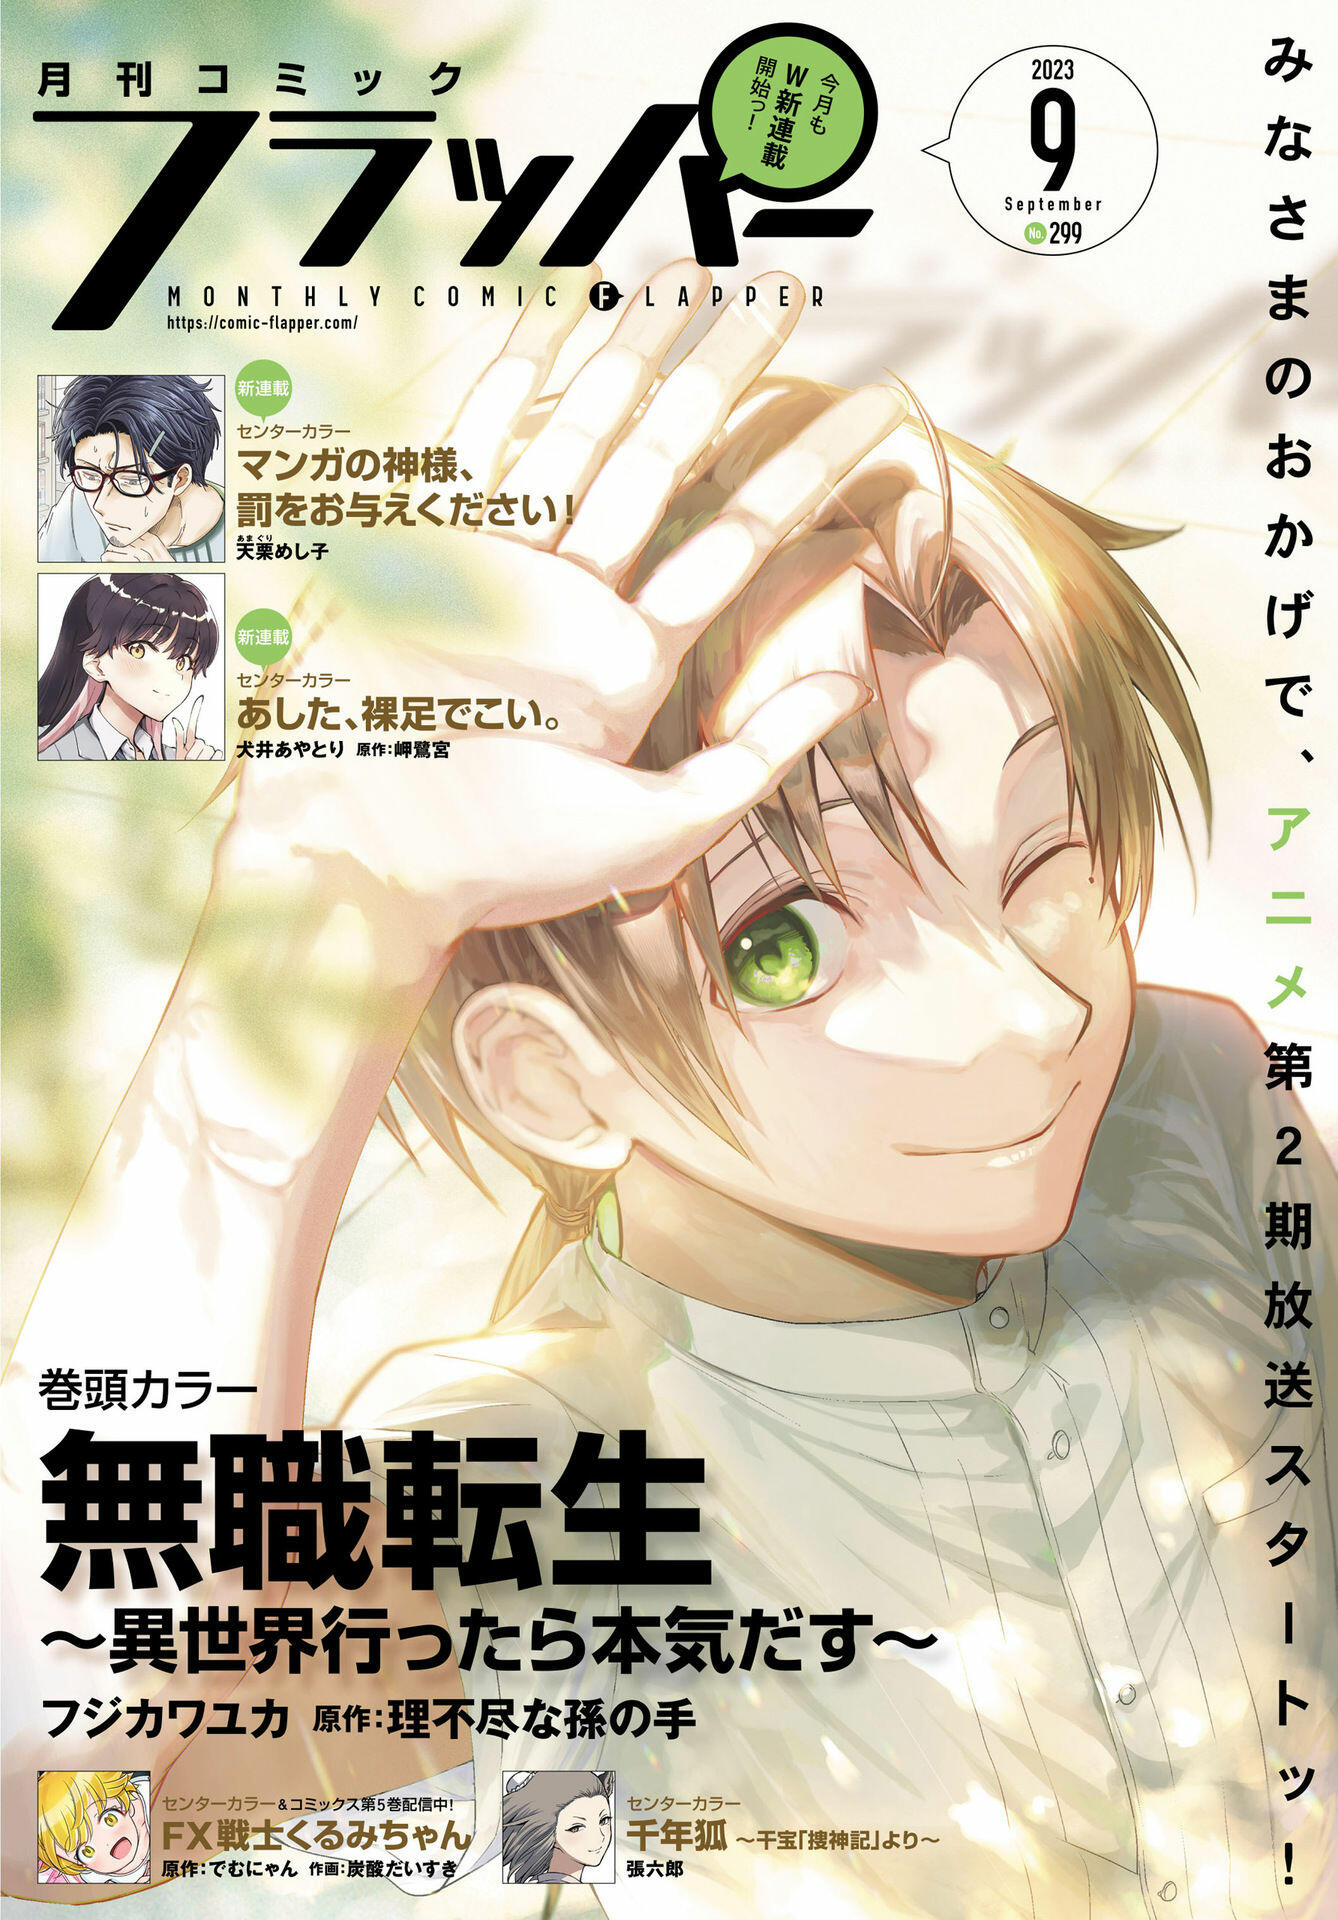 Mushoku Tensei: Jobless Reincarnation, Chapter 95 - Mushoku Tensei: Jobless  Reincarnation Manga Online